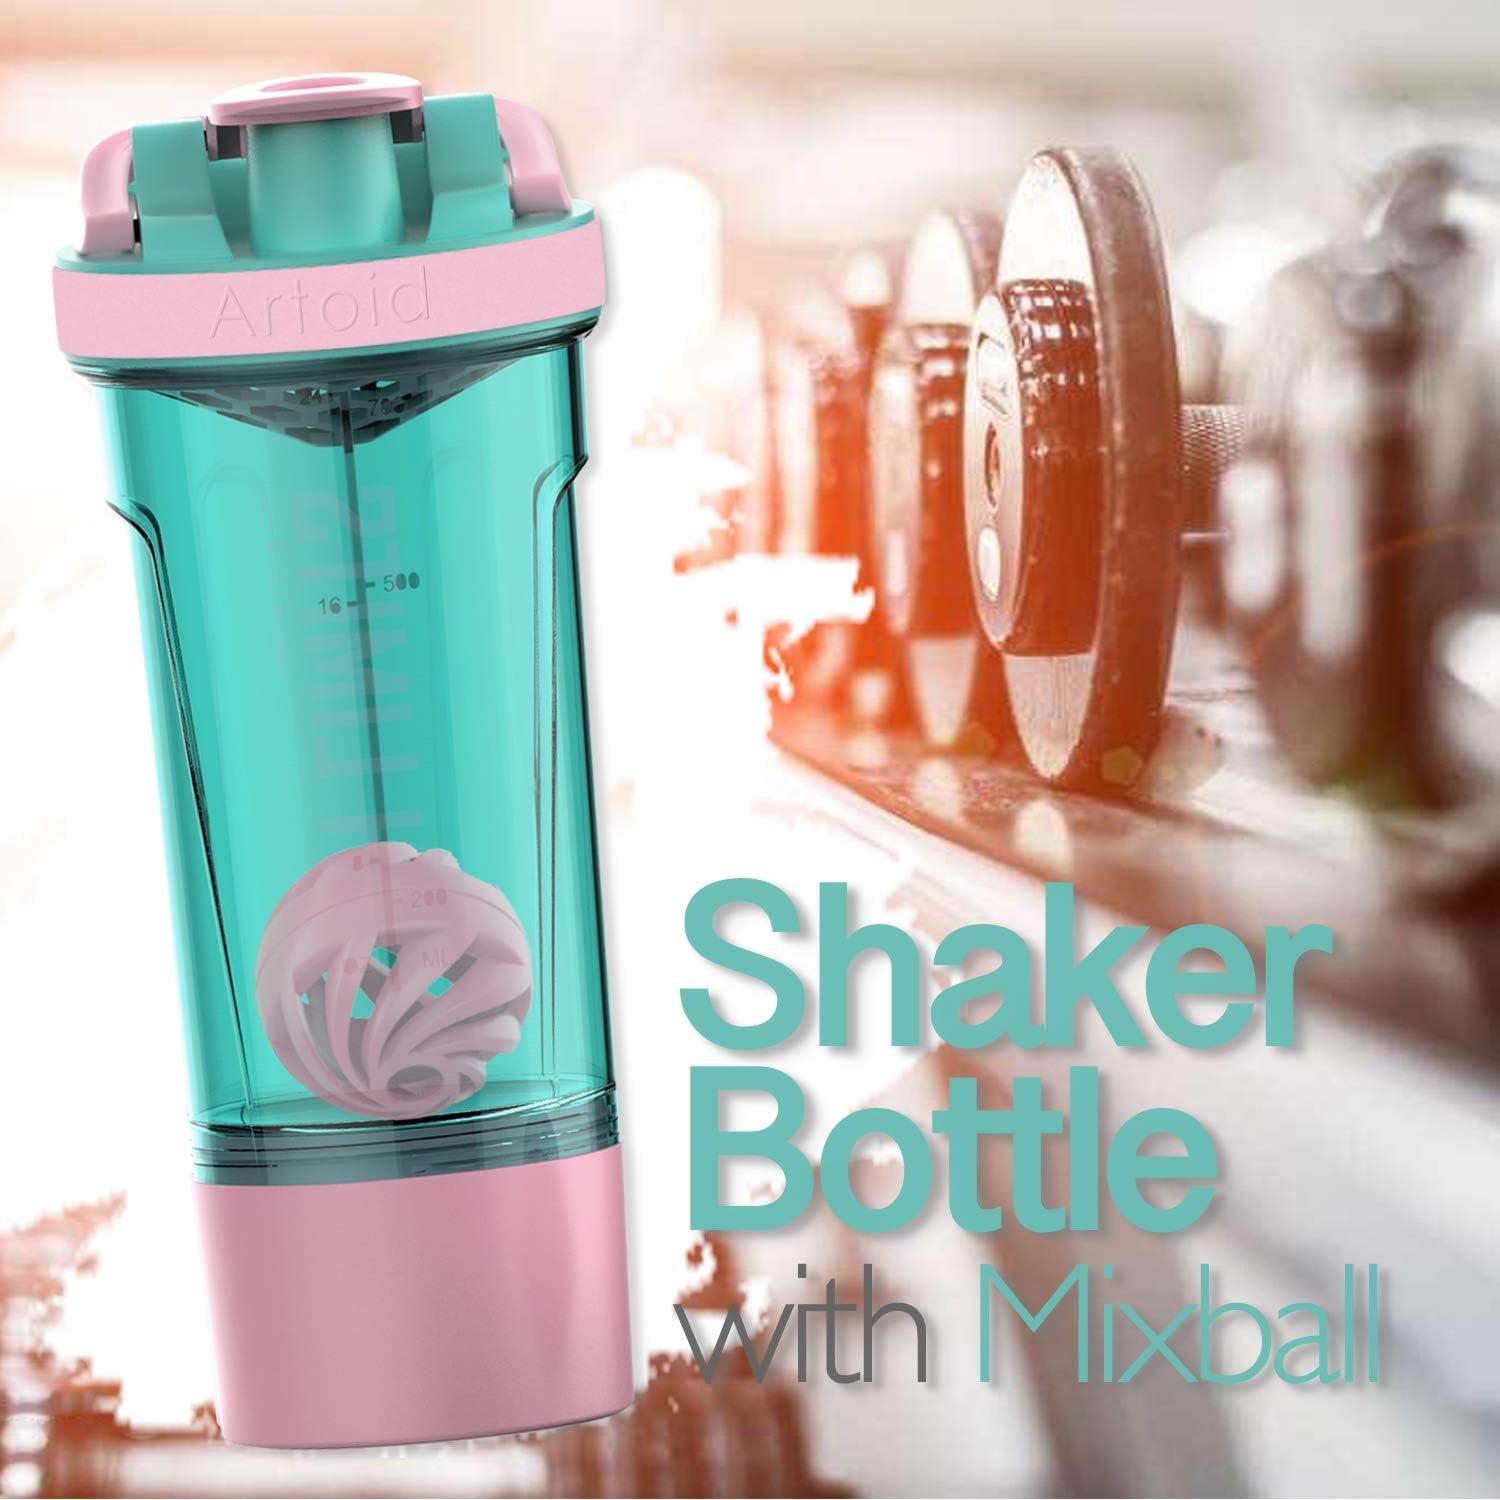 Motivational Gym Workout Bottles, 24oz Protein Shaker Blender